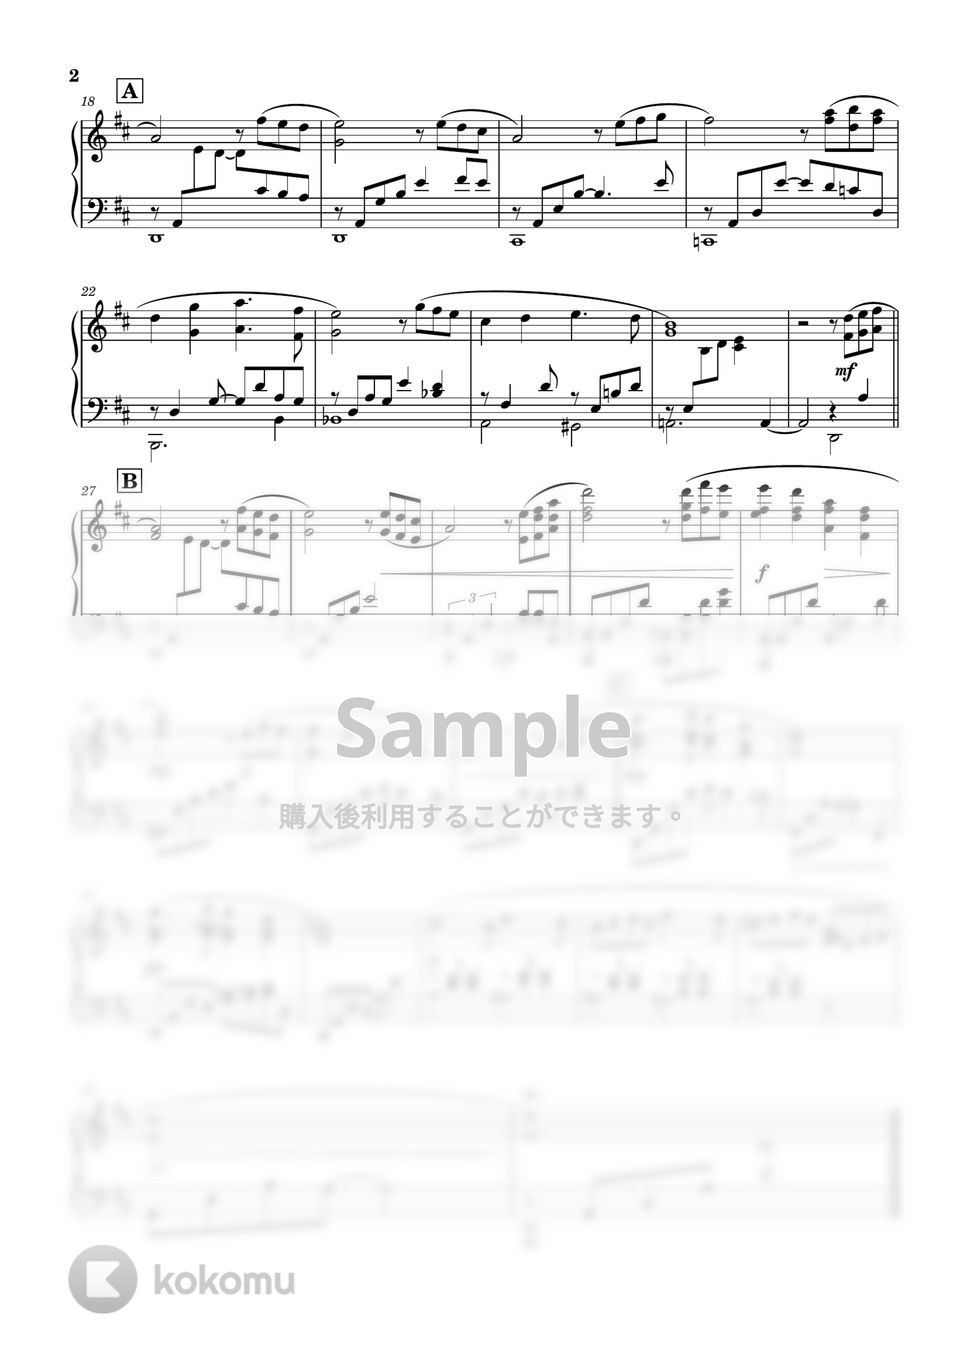 映画「海の上のピアニスト」より / Legend of 1900 - Ennio Morricone - 愛を奏でて - Playing Love (ピアノ) by PiaFlu